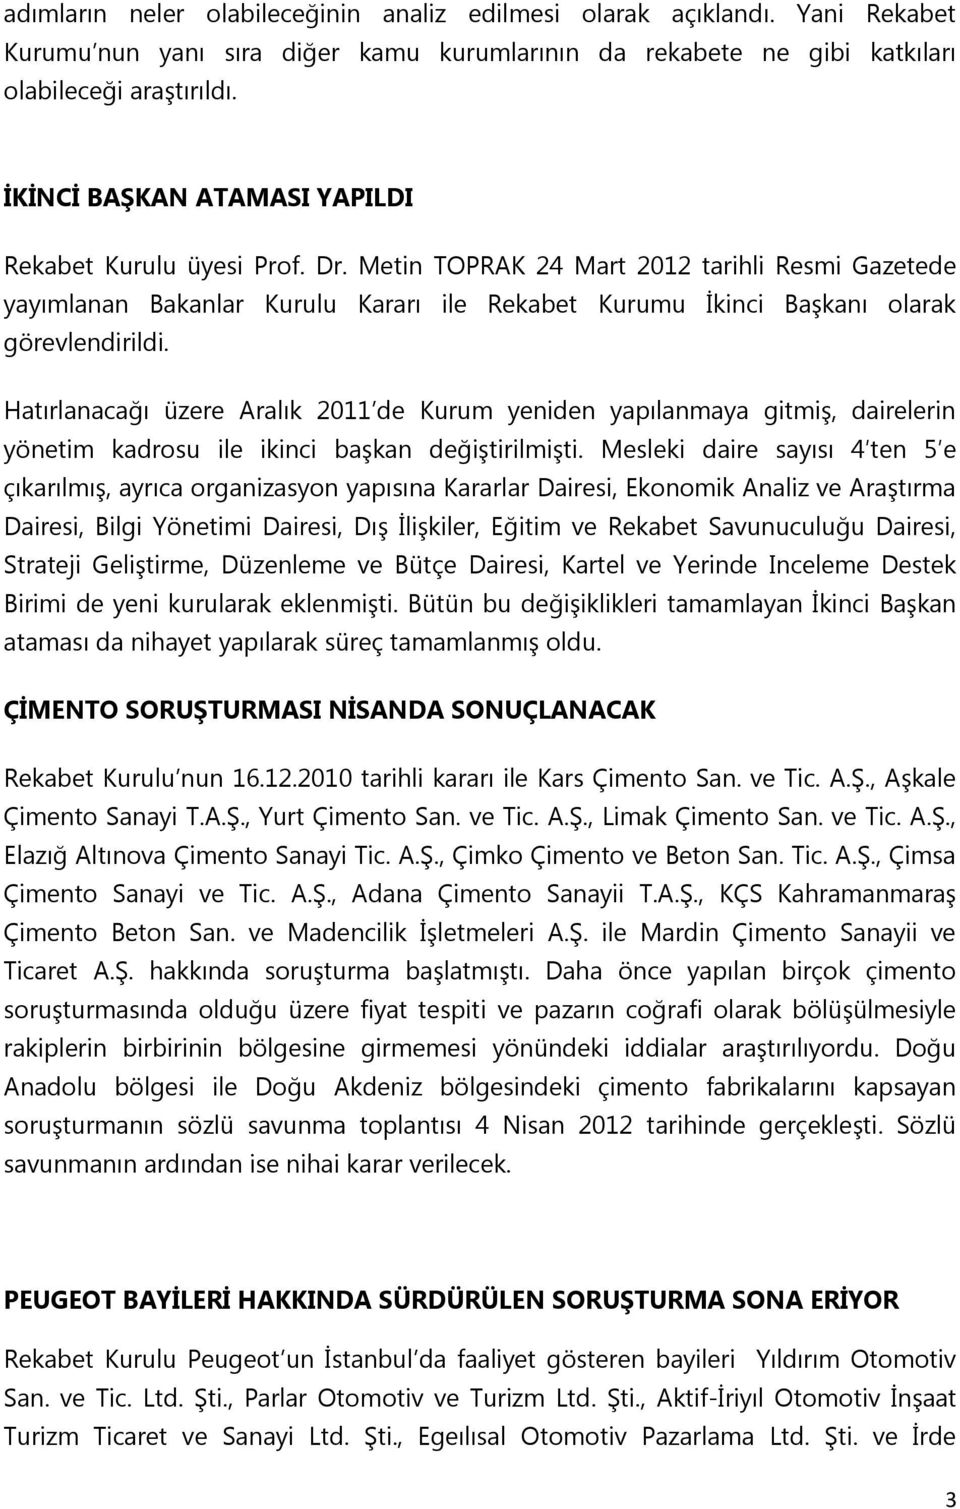 Metin TOPRAK 24 Mart 2012 tarihli Resmi Gazetede yayımlanan Bakanlar Kurulu Kararı ile Rekabet Kurumu İkinci Başkanı olarak görevlendirildi.